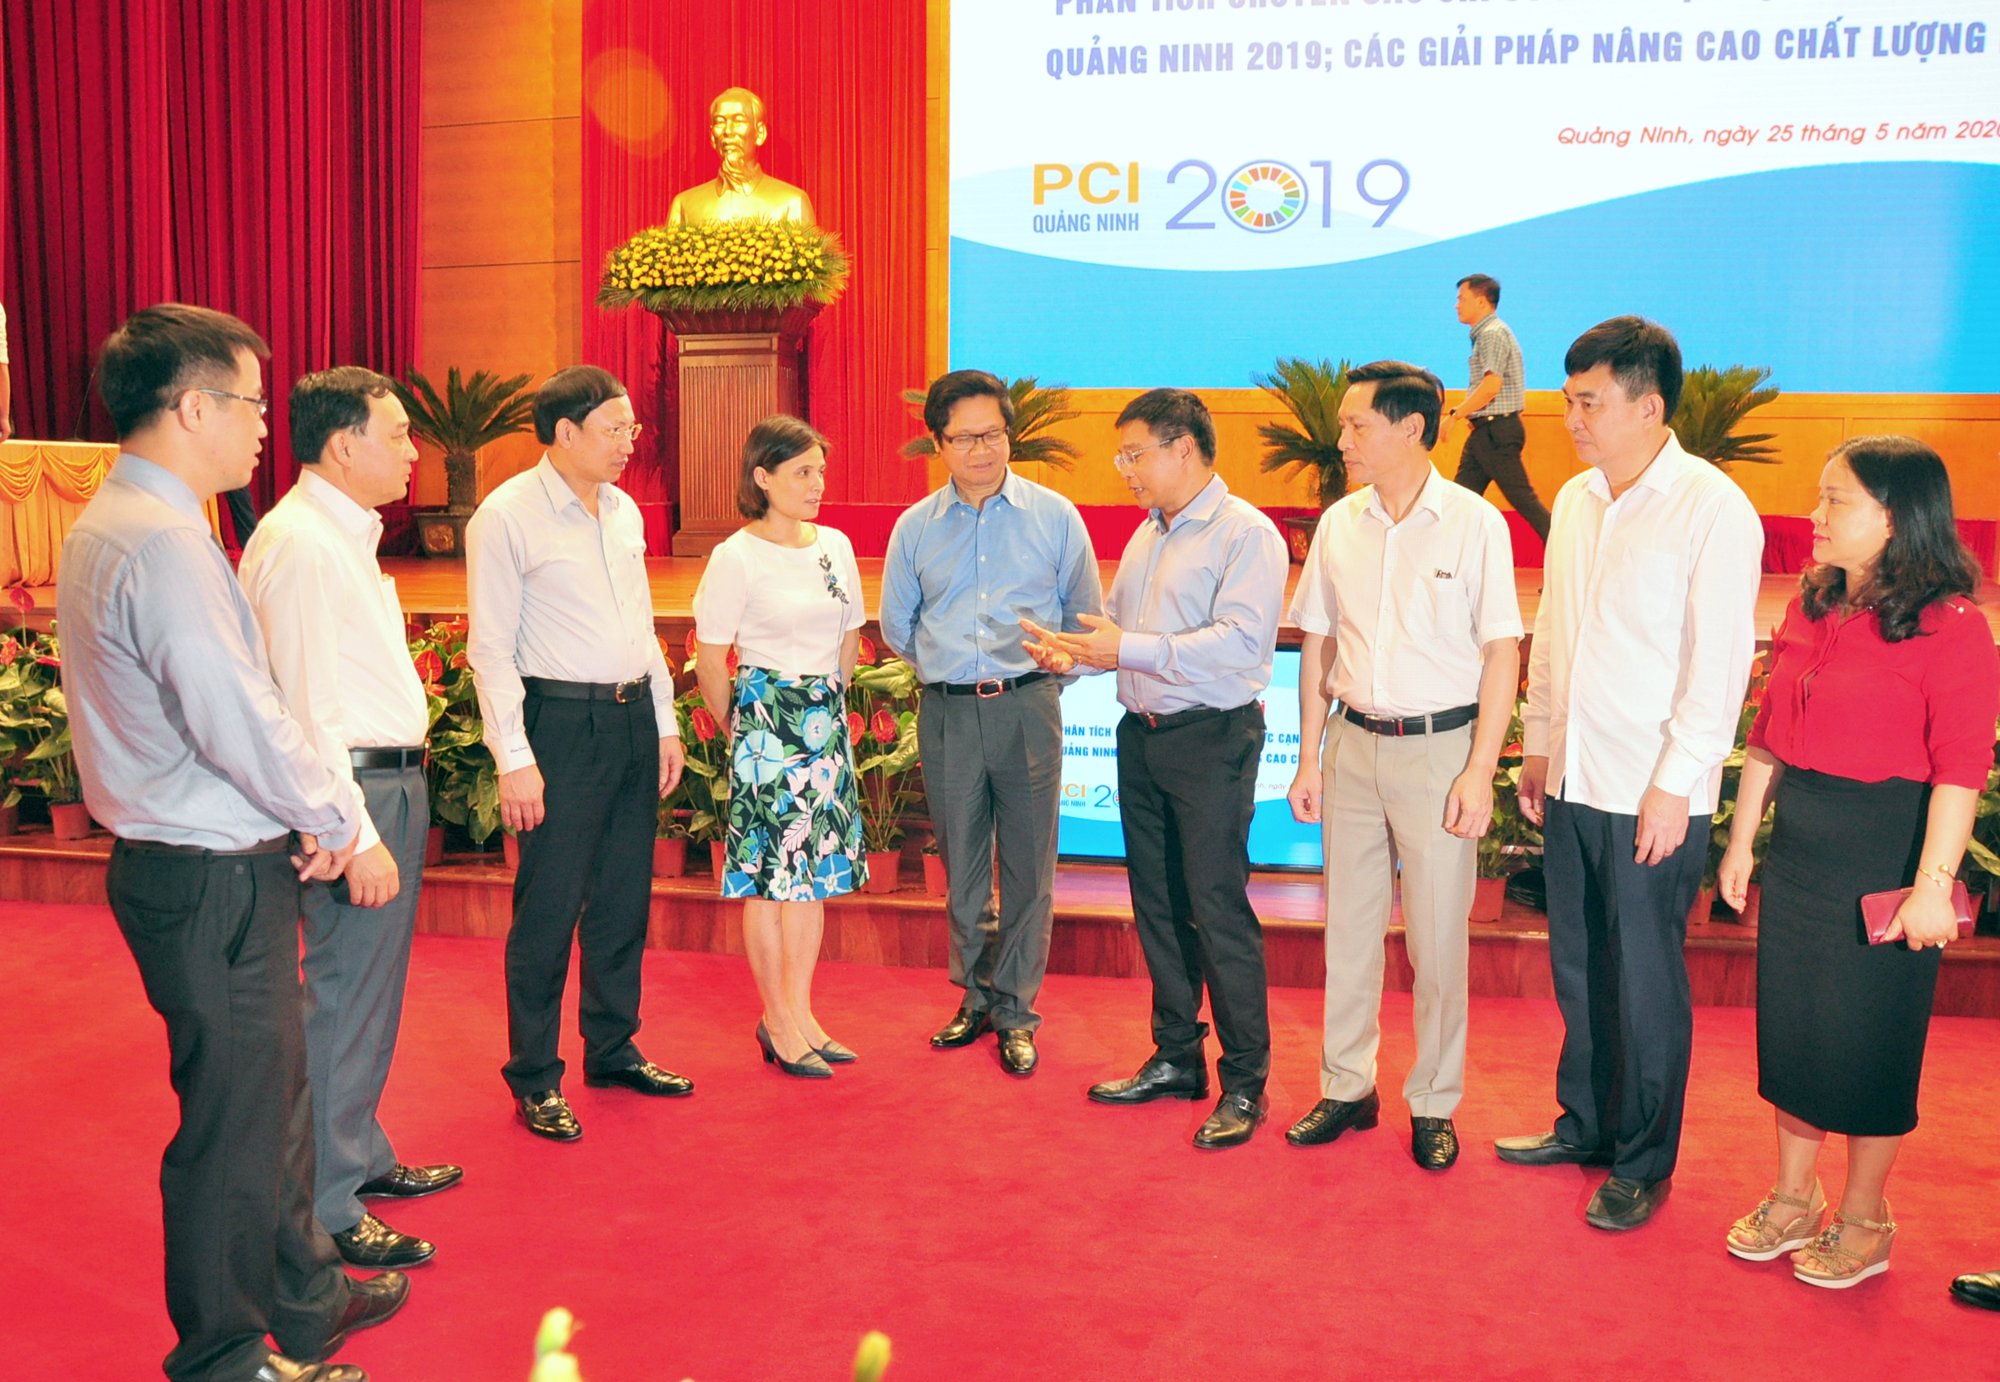 Lãnh đạo tỉnh Quảng Ninh và các đại biểu trao đổi bên lề hội nghị.